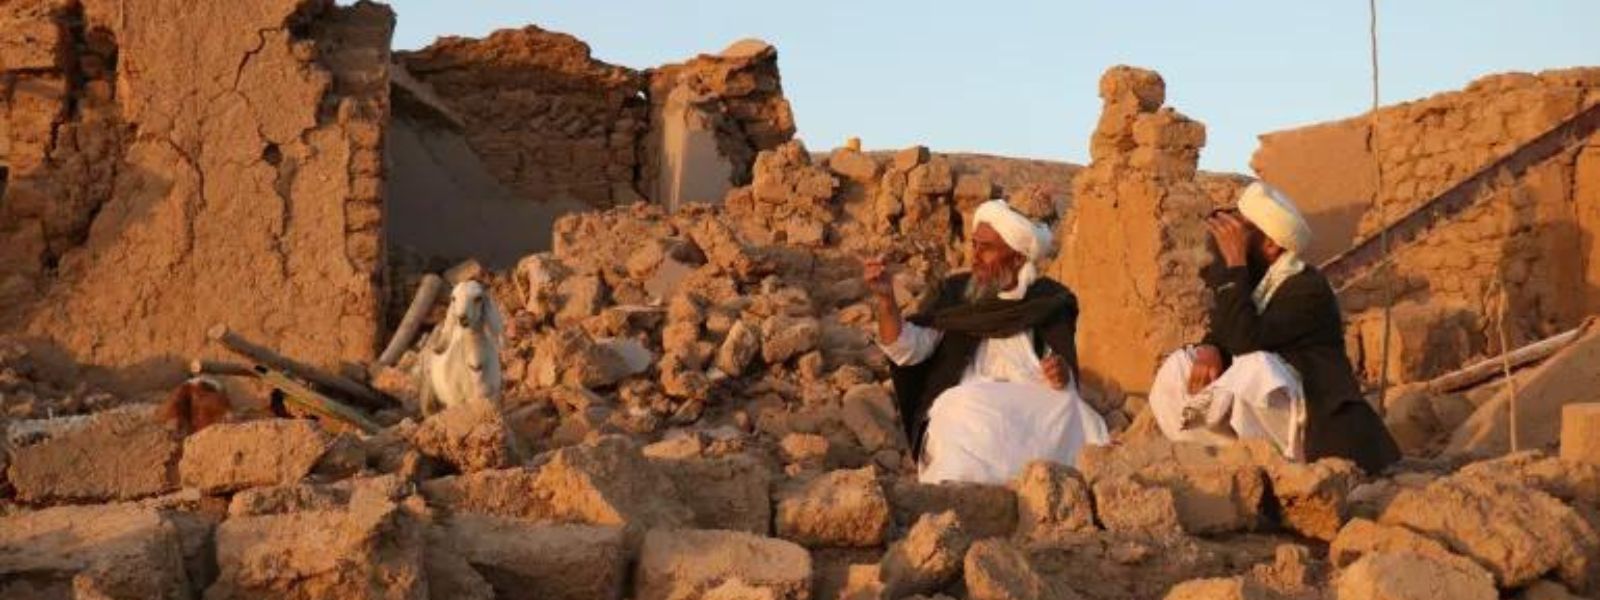 Afghanistan earthquake: Hundreds feared dead